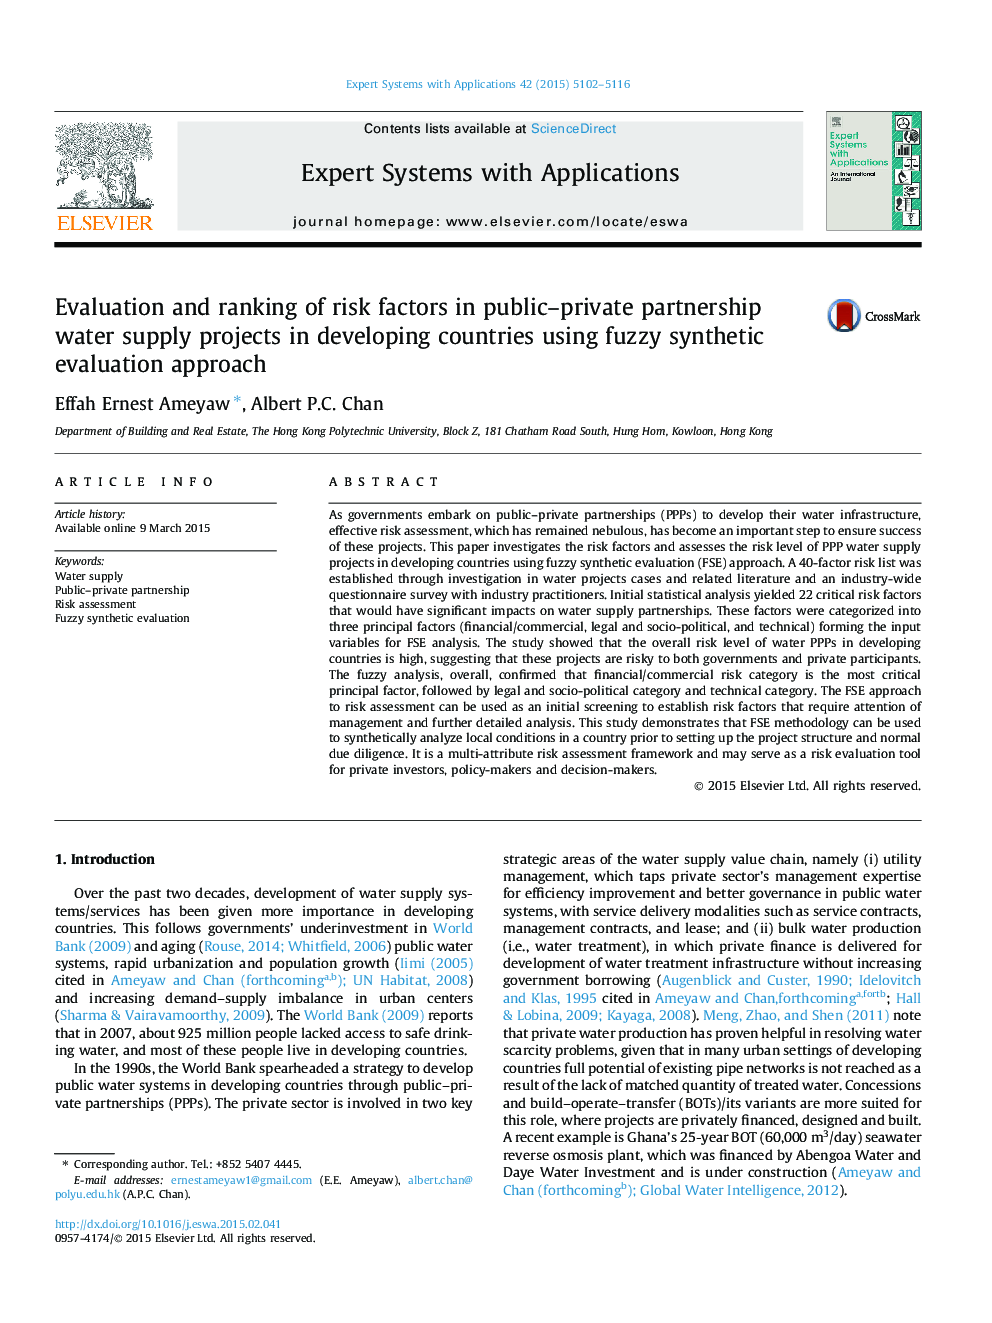 ارزیابی و رتبه بندی عوامل خطرساز در پروژه های تامین آب شرب عمومی در کشورهای در حال توسعه با استفاده از رویکرد ارزیابی مصنوعی فازی 